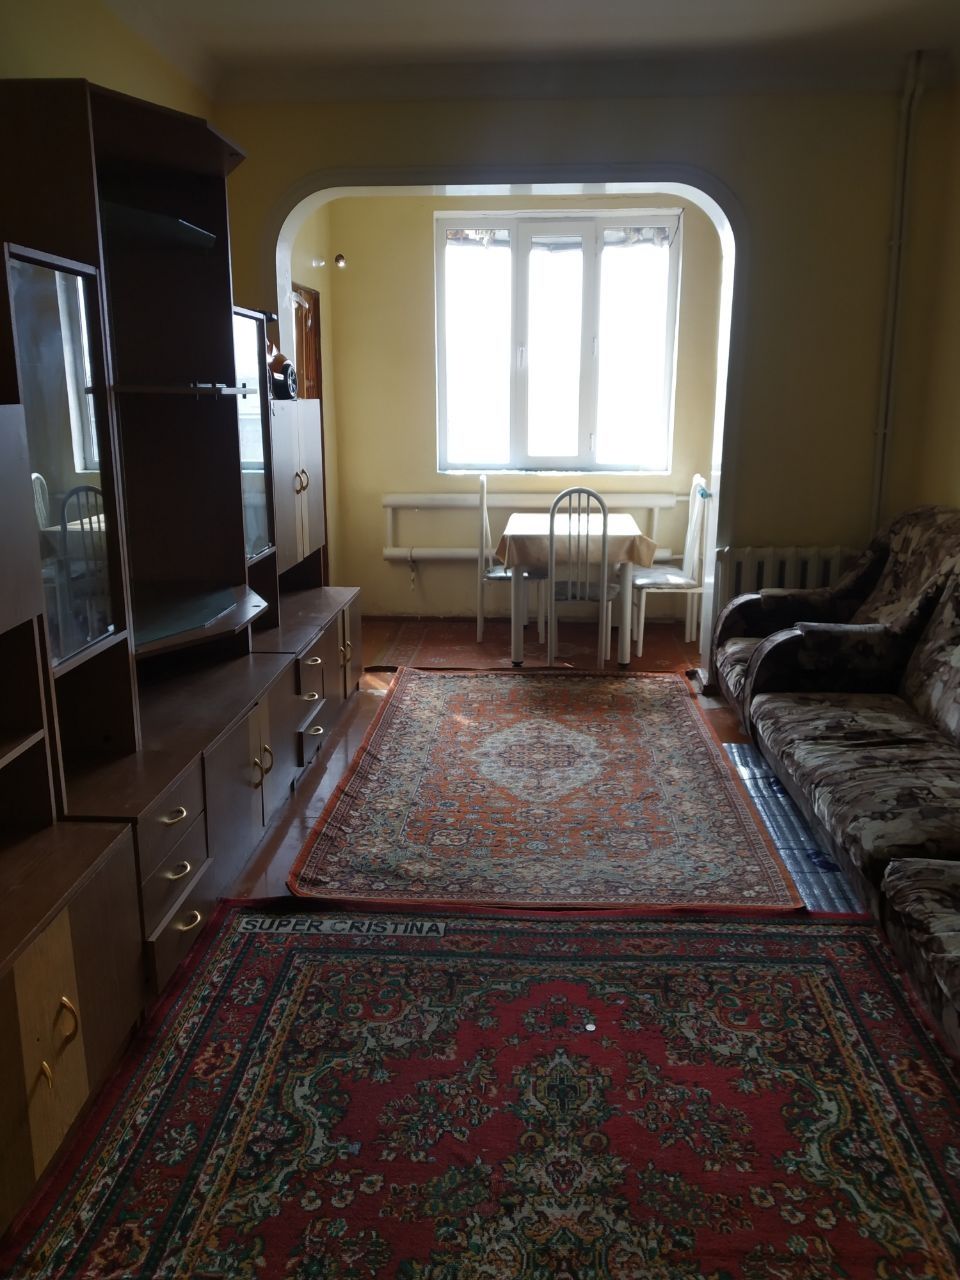 Аренда квартиры 2 комнатная Кадышева